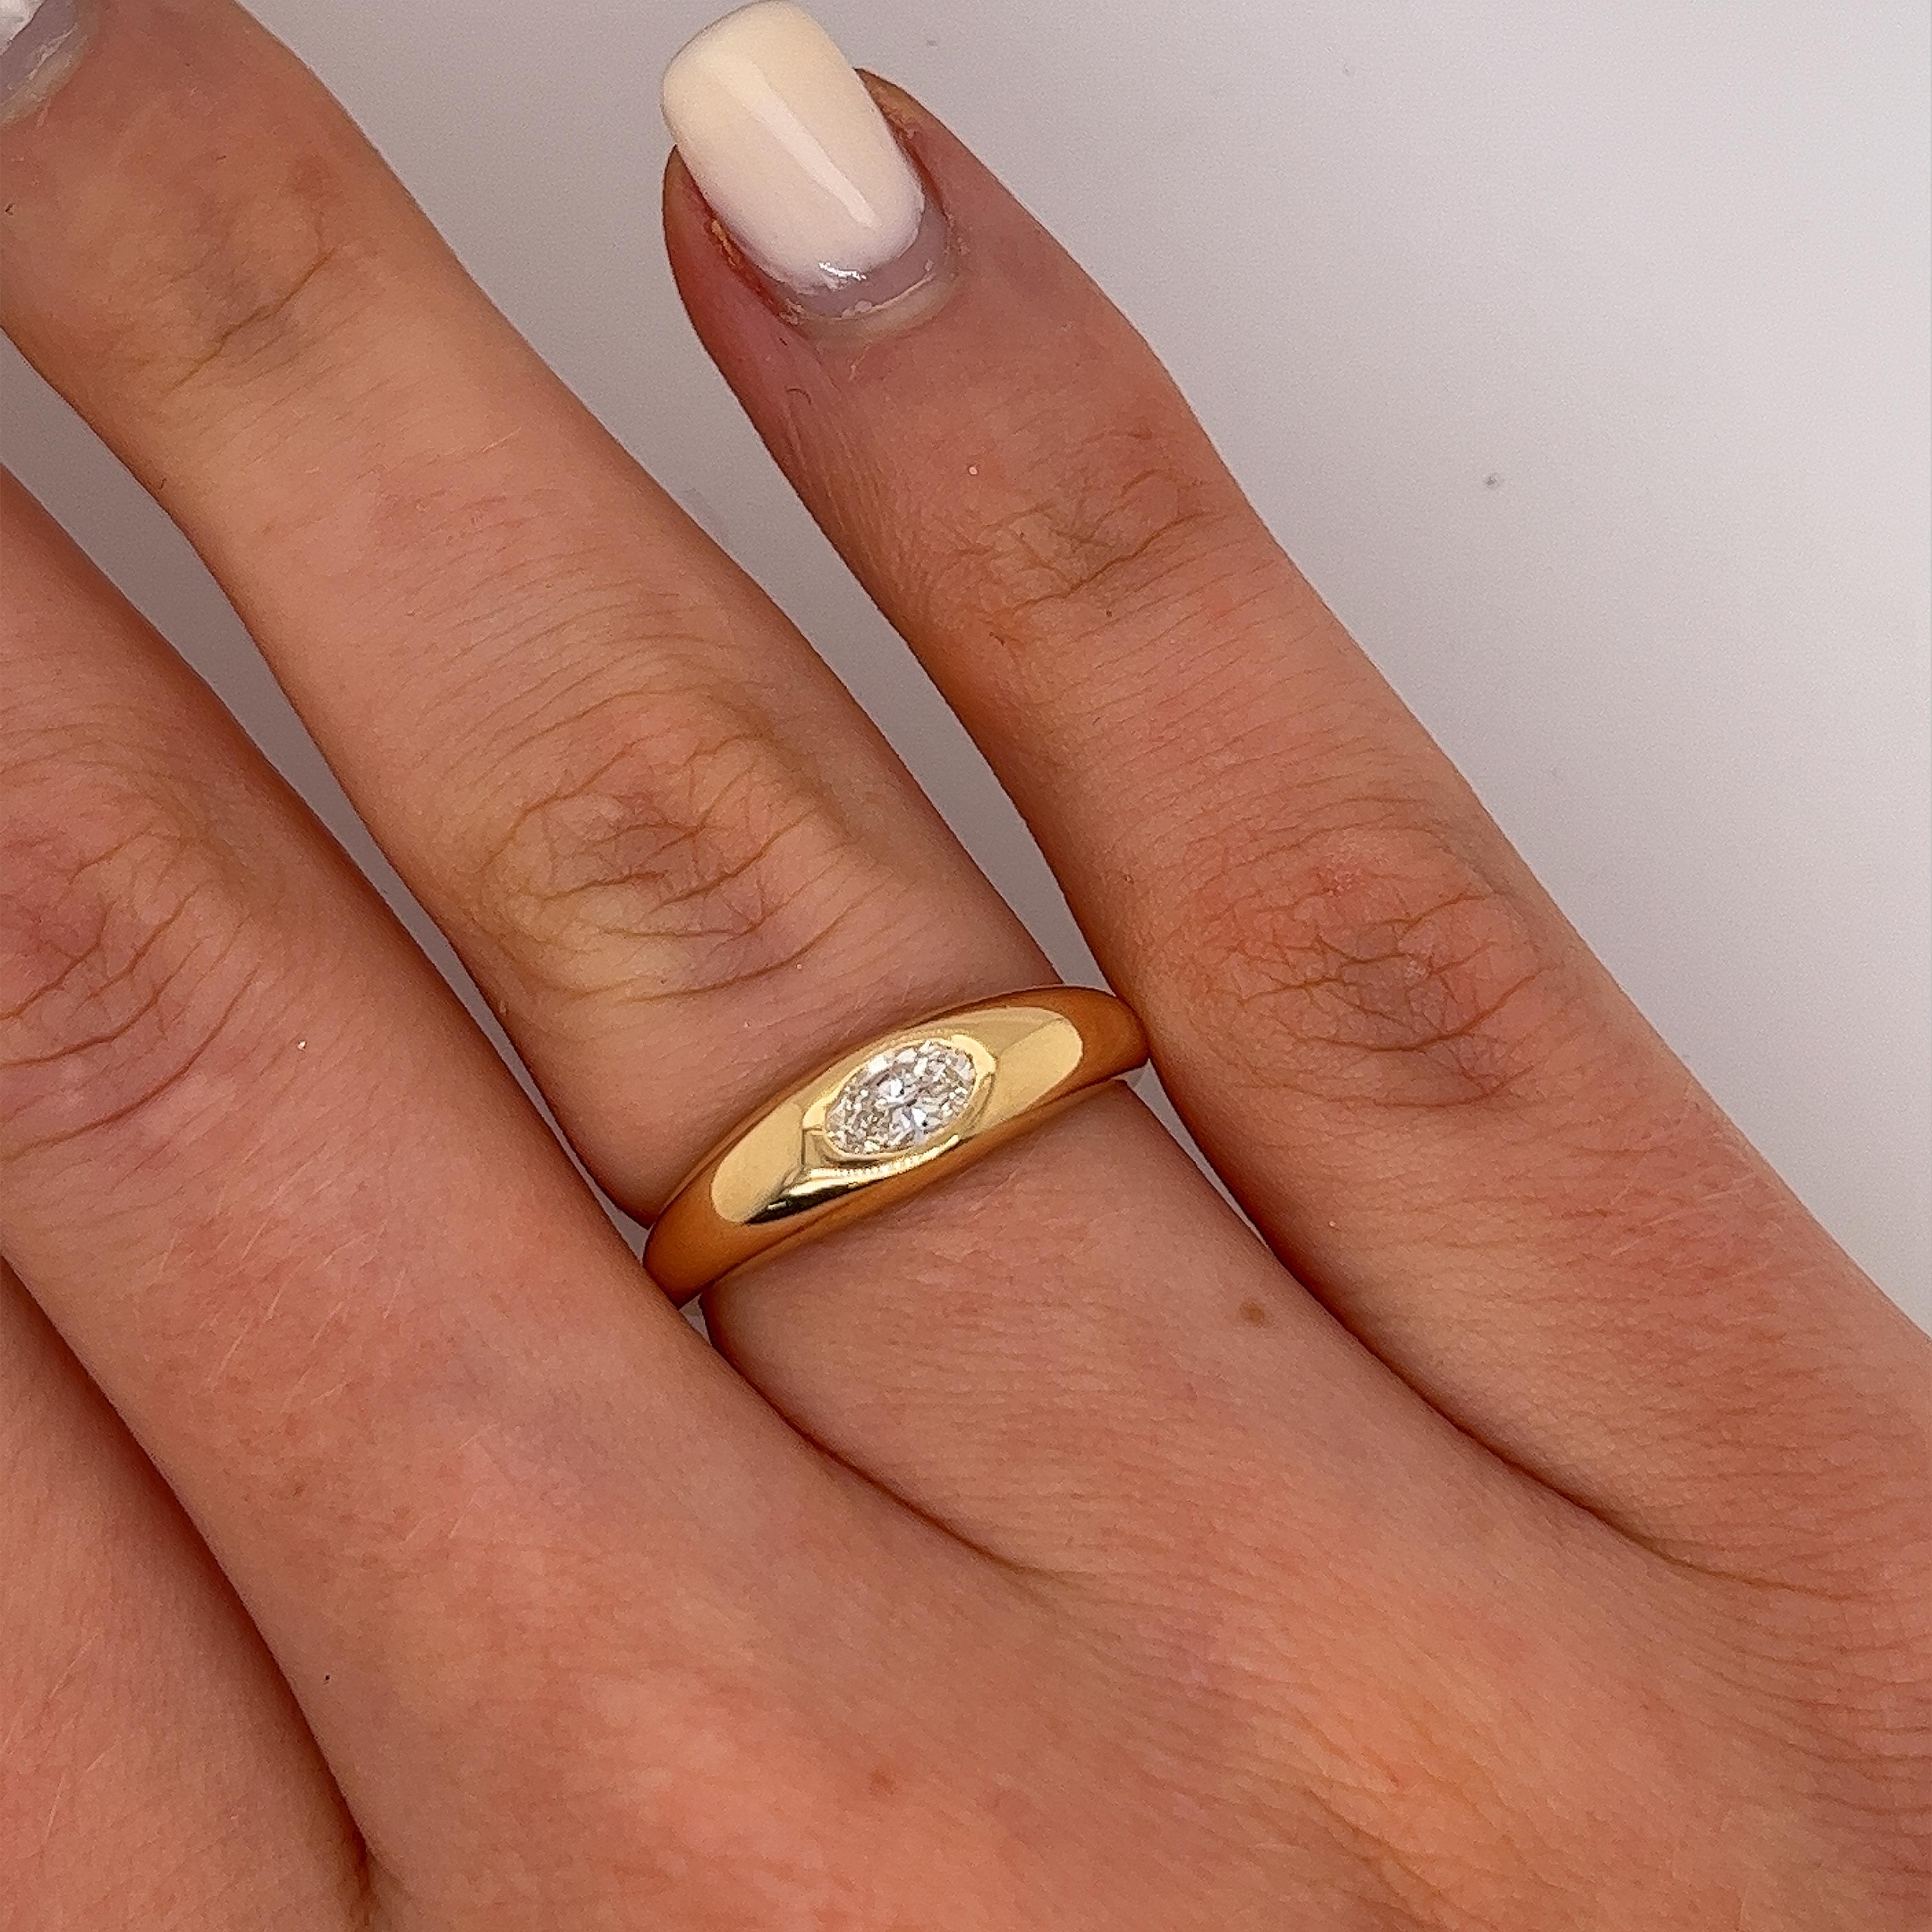 Neu von Jewellery Cave aus 18 Karat Gelbgold 
Single Stone Ring, besetzt mit einem ovalen 0,30ct G/VS Naturdiamanten.
Der Ring ist eine perfekte Ergänzung zu jedem Ensemble 
und kann zu jeder Gelegenheit getragen werden.
Gesamtgewicht der Diamanten: